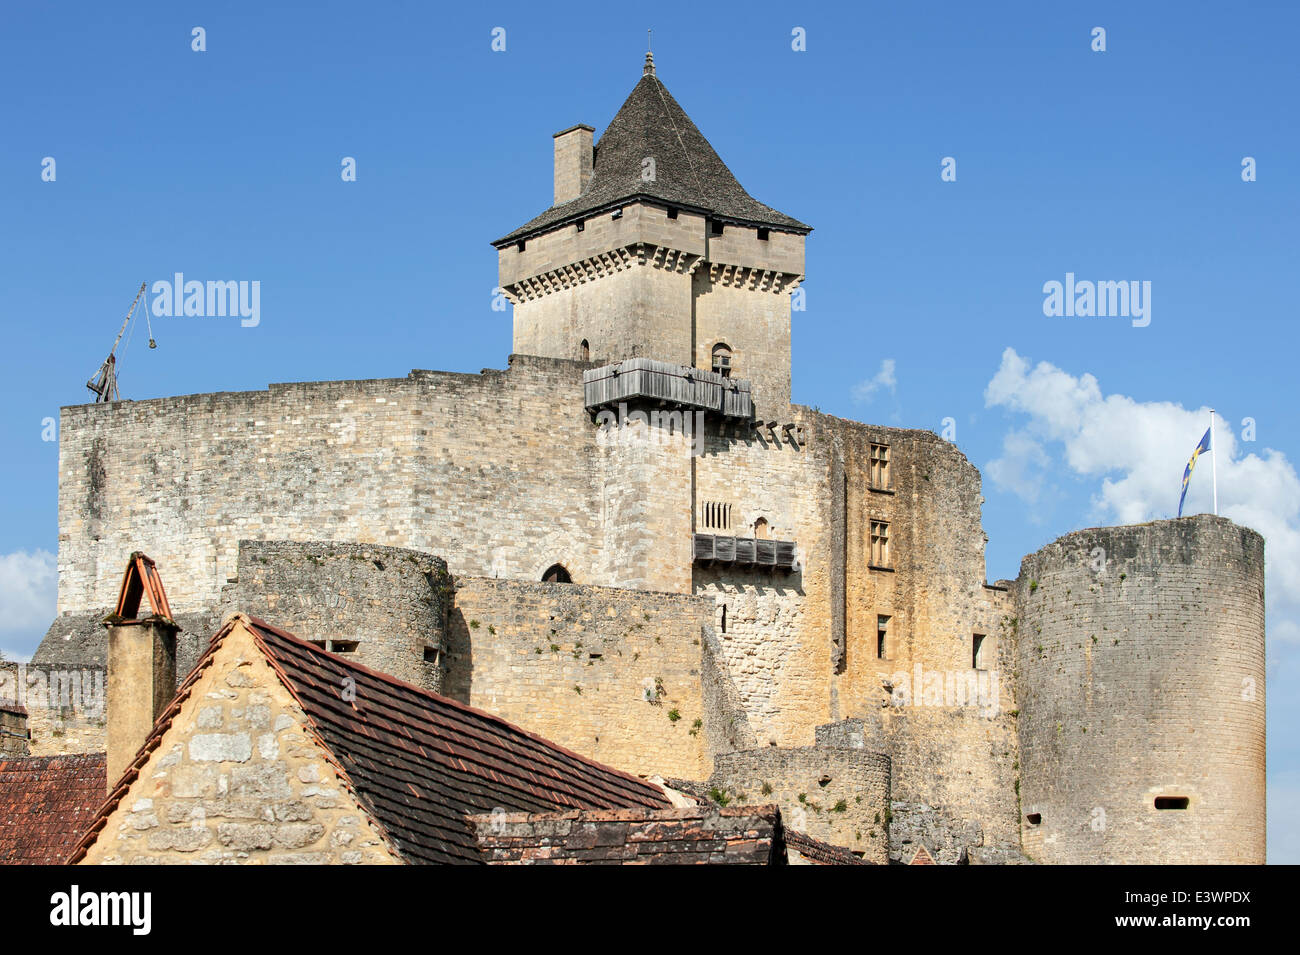 Château de Castelnaud, medieval fortress at Castelnaud-la-Chapelle, Dordogne, Aquitaine, France Stock Photo